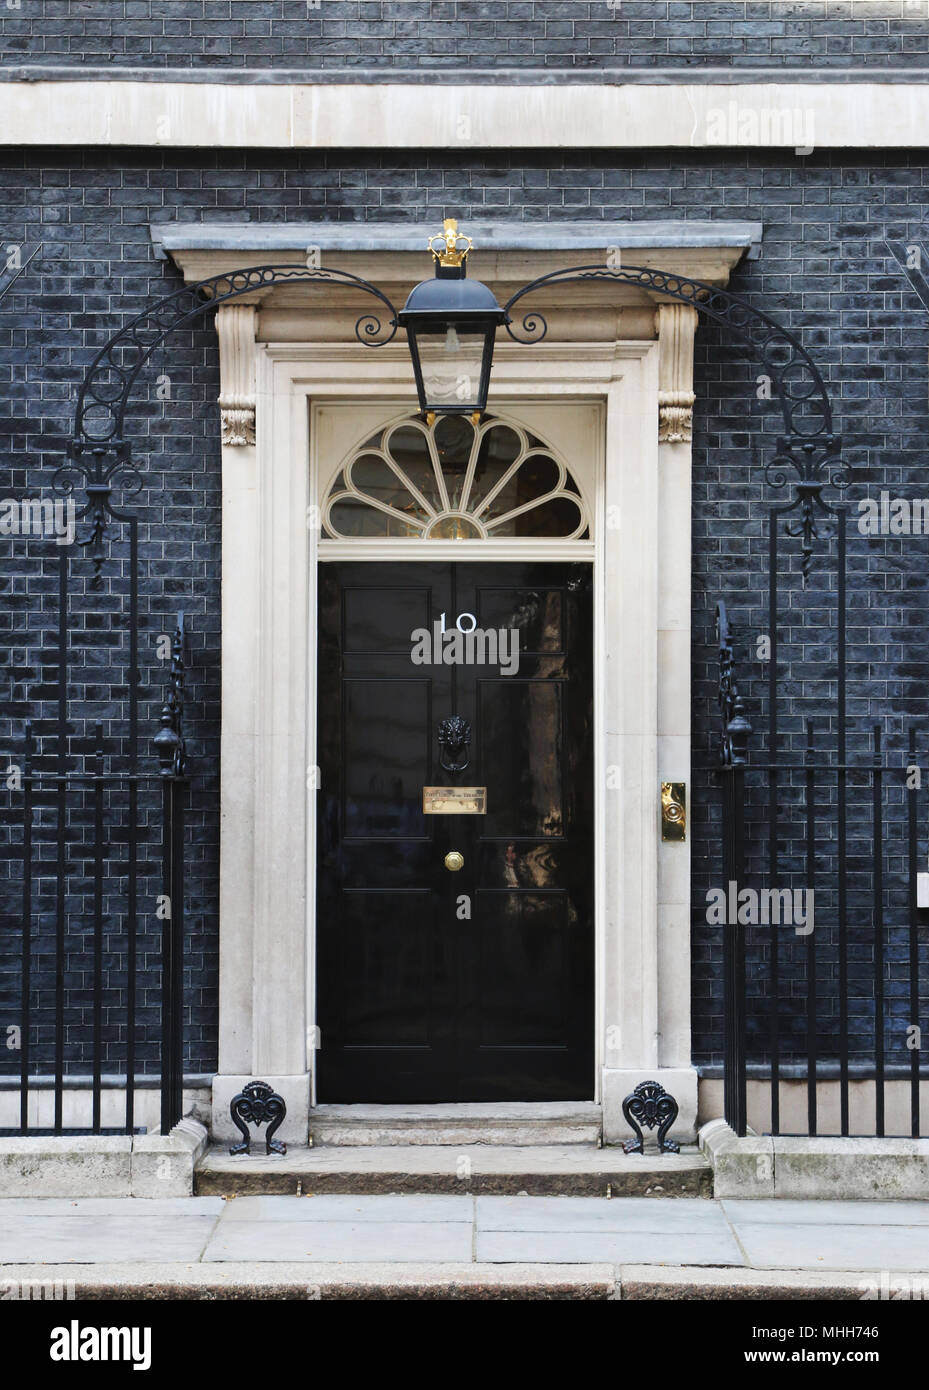 Au 10, Downing Street. Porte avant de la résidence du Premier Ministre britannique. Londres, Angleterre, Royaume-Uni. Banque D'Images